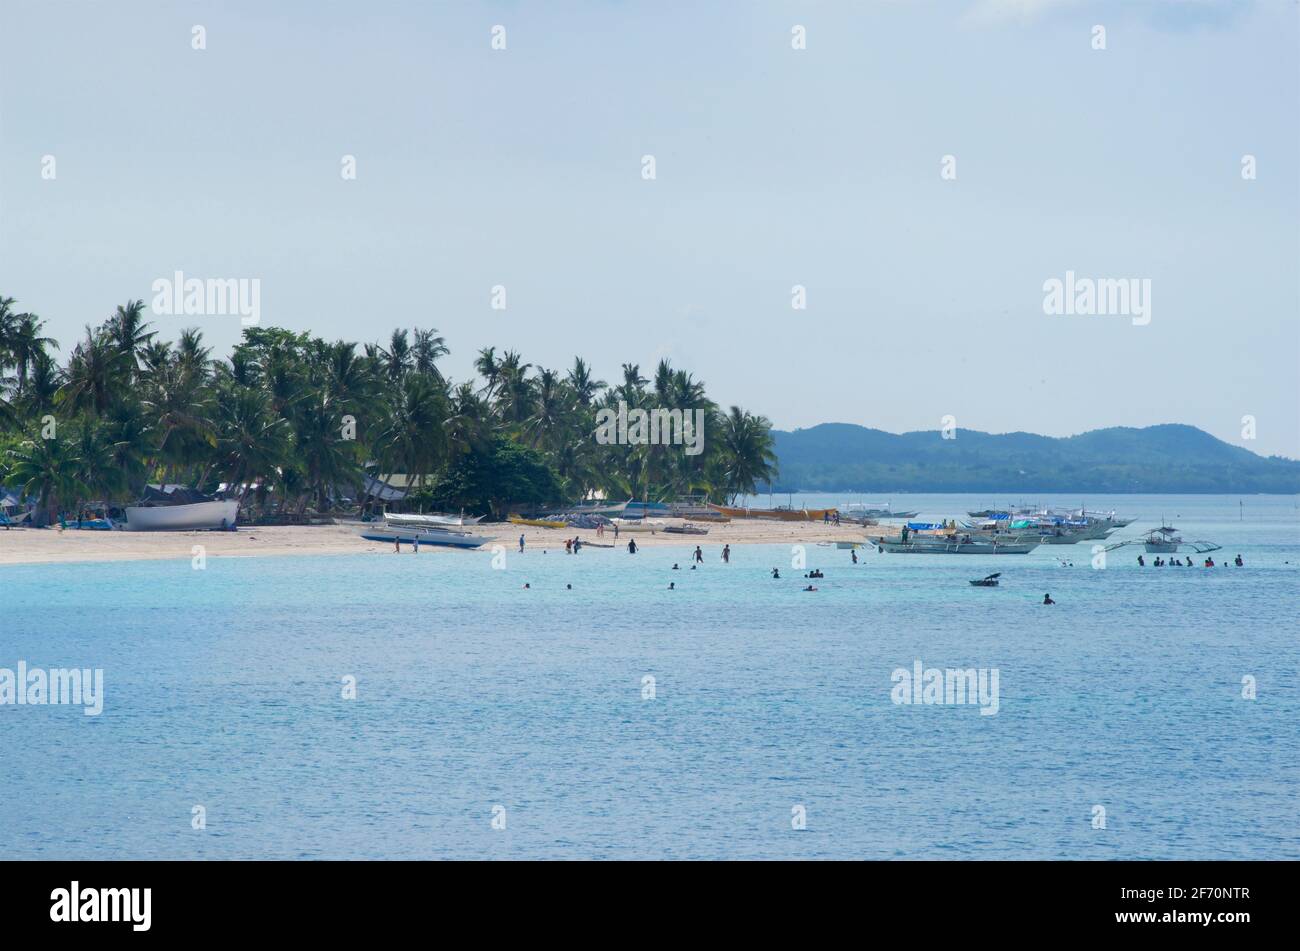 Plage de sable à Santa Fe, Bantayan Island, Cebu, Philippines Banque D'Images